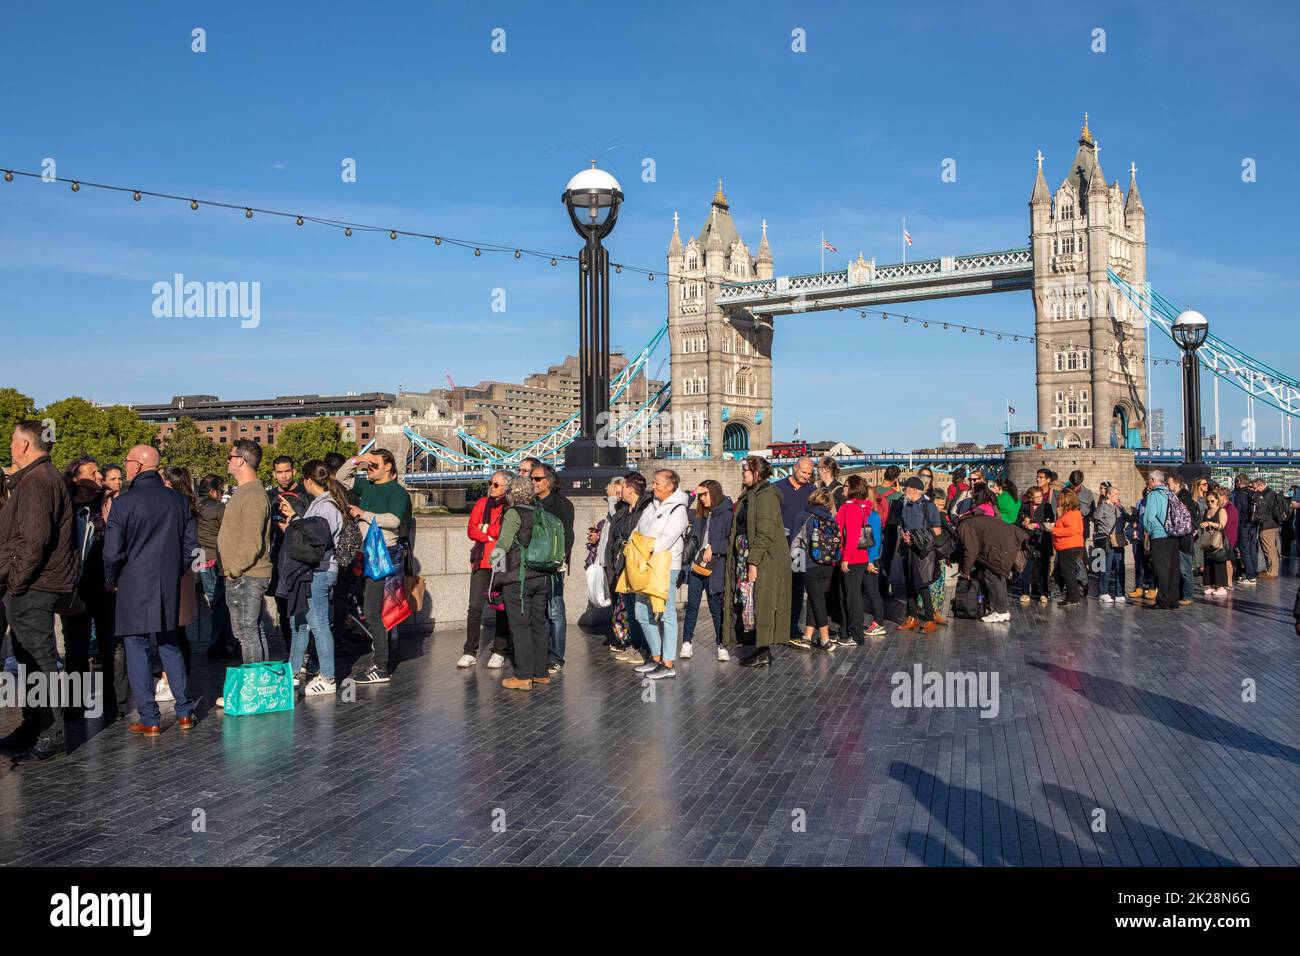 Londres, Royaume-Uni - September17th 2022 : la file d'attente dans l'État pour voir la reine Elizabeth II, en passant par le légendaire Tower Bridge à Londres, Royaume-Uni. Banque D'Images